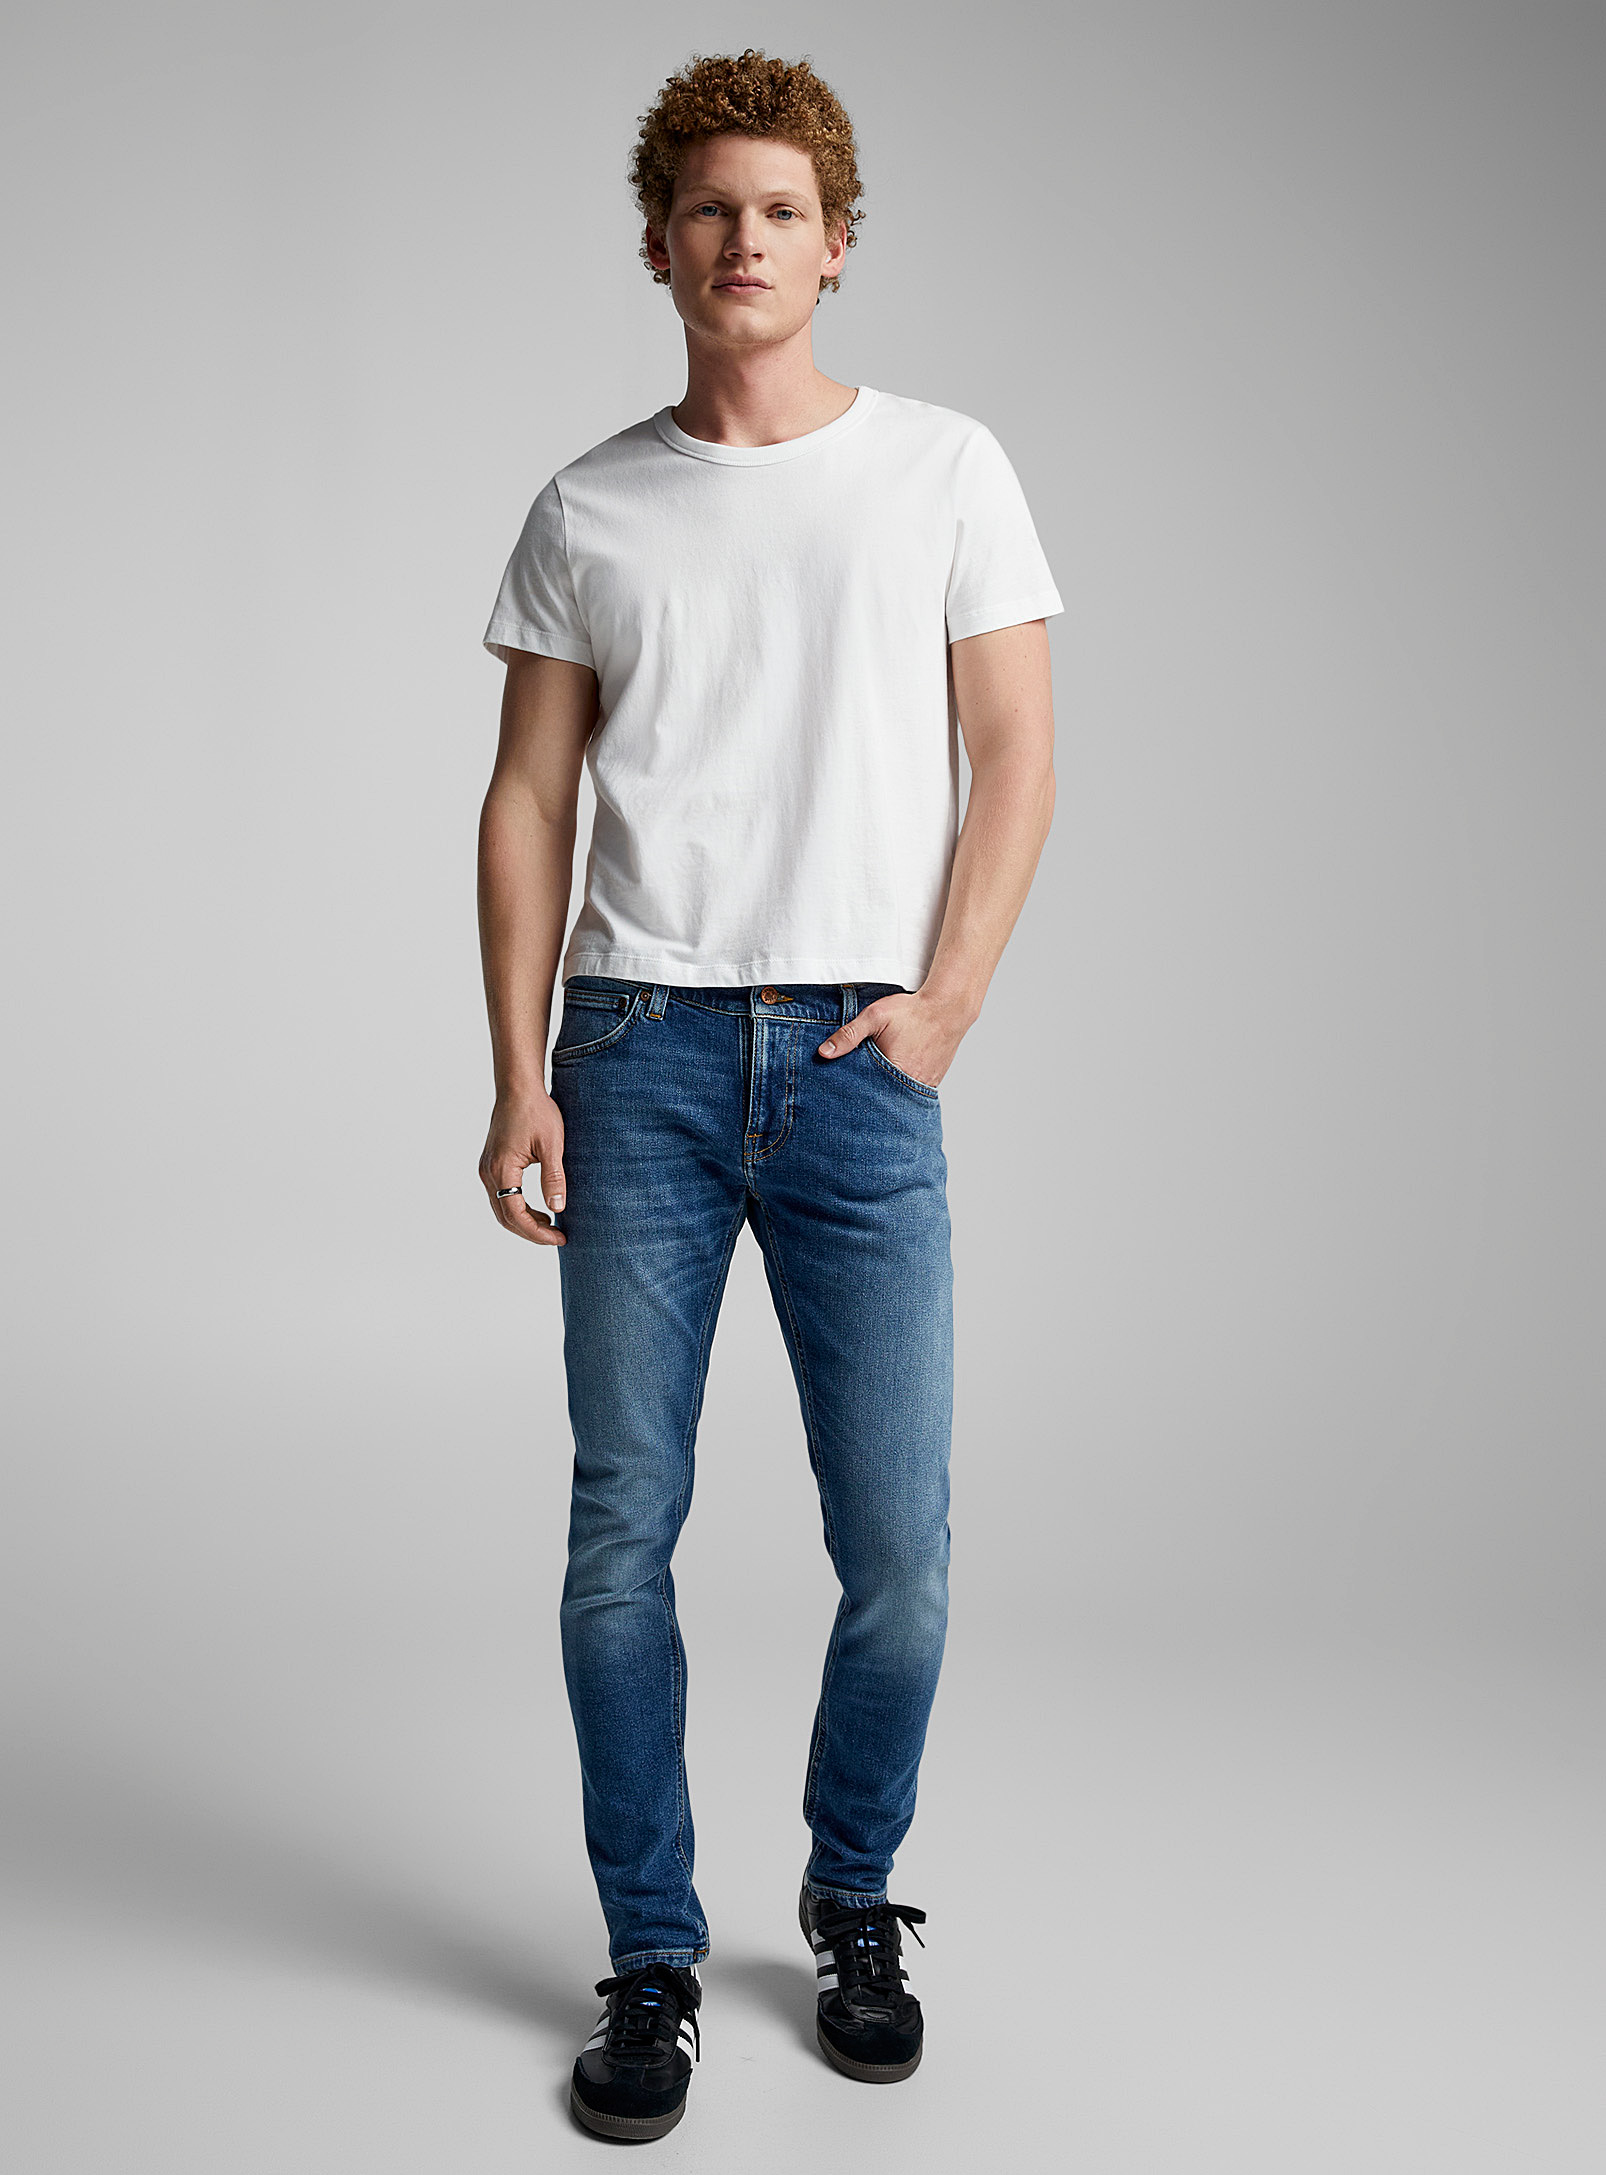 Nudie Jeans - Men's Tight Terry medium-blue jean Skinny fit